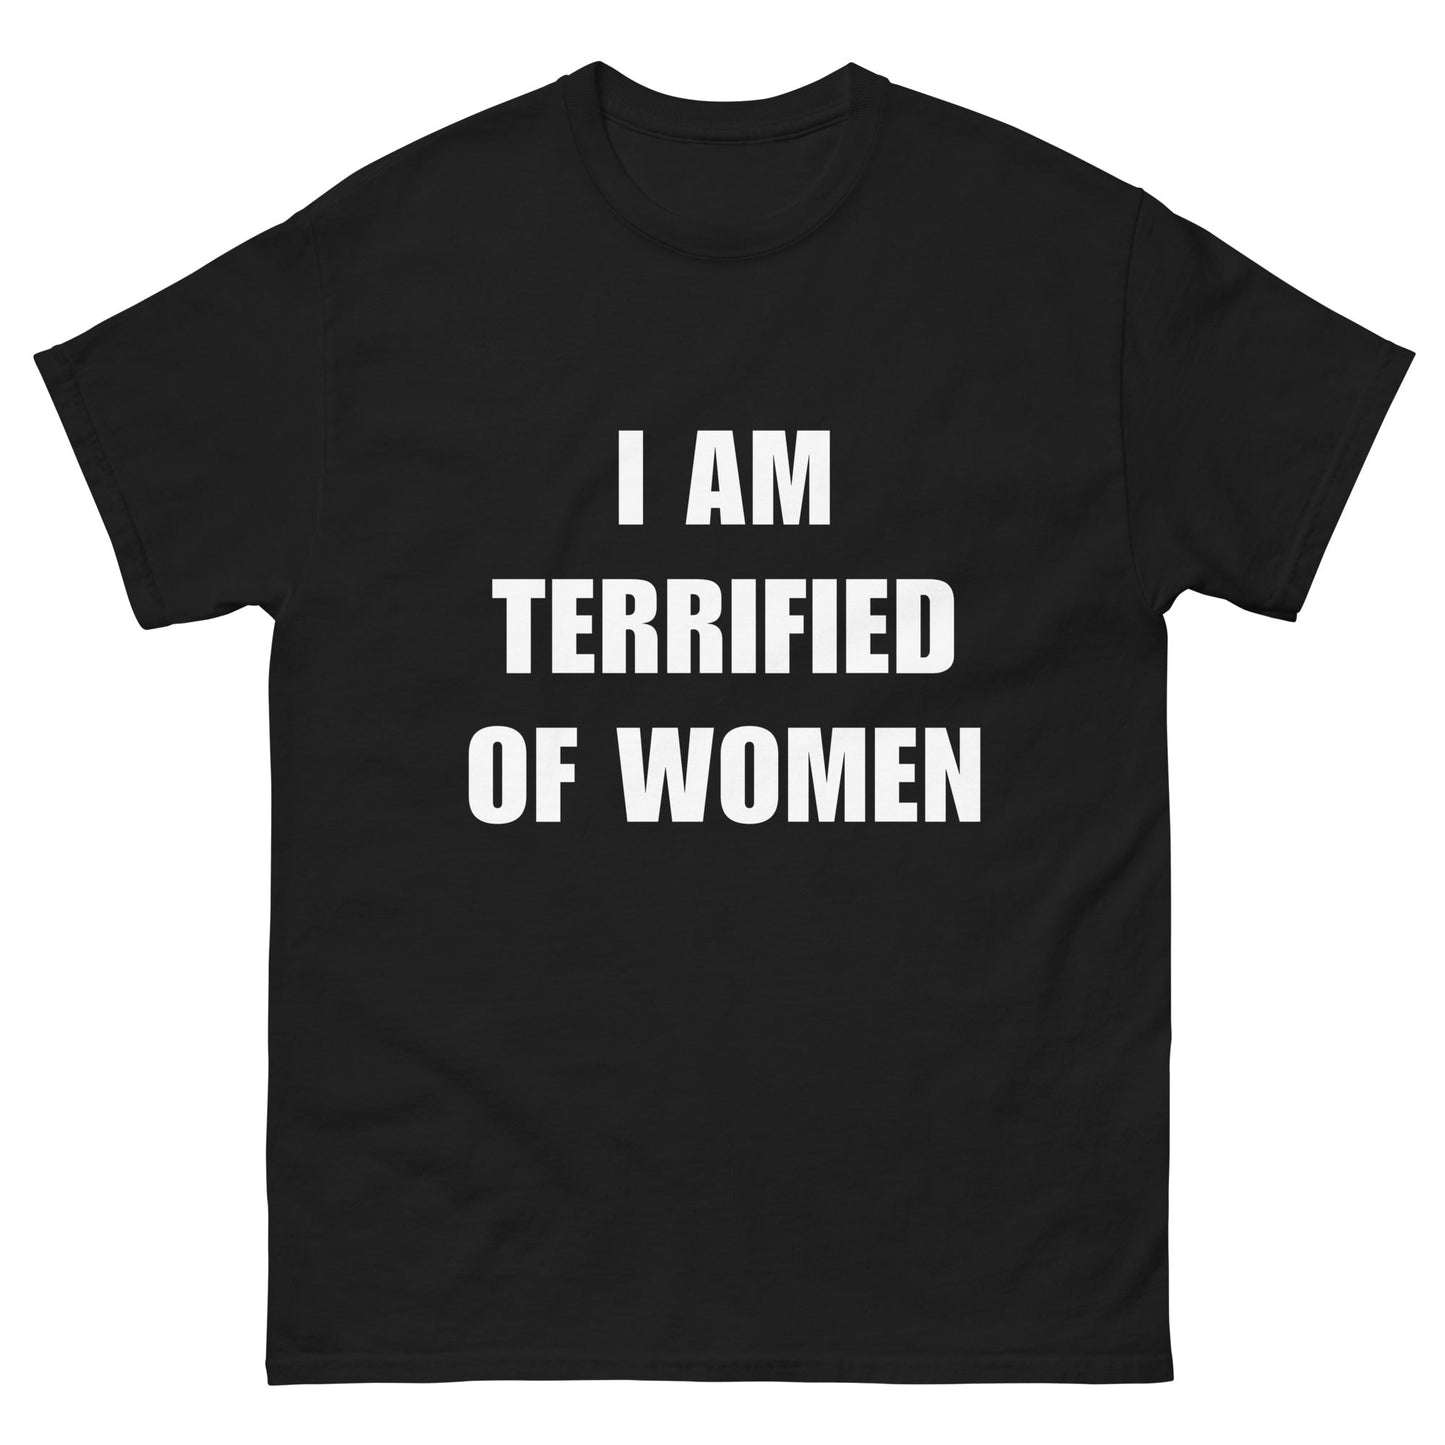 I AM TERRIFIED OF WOMEN – HardShirts